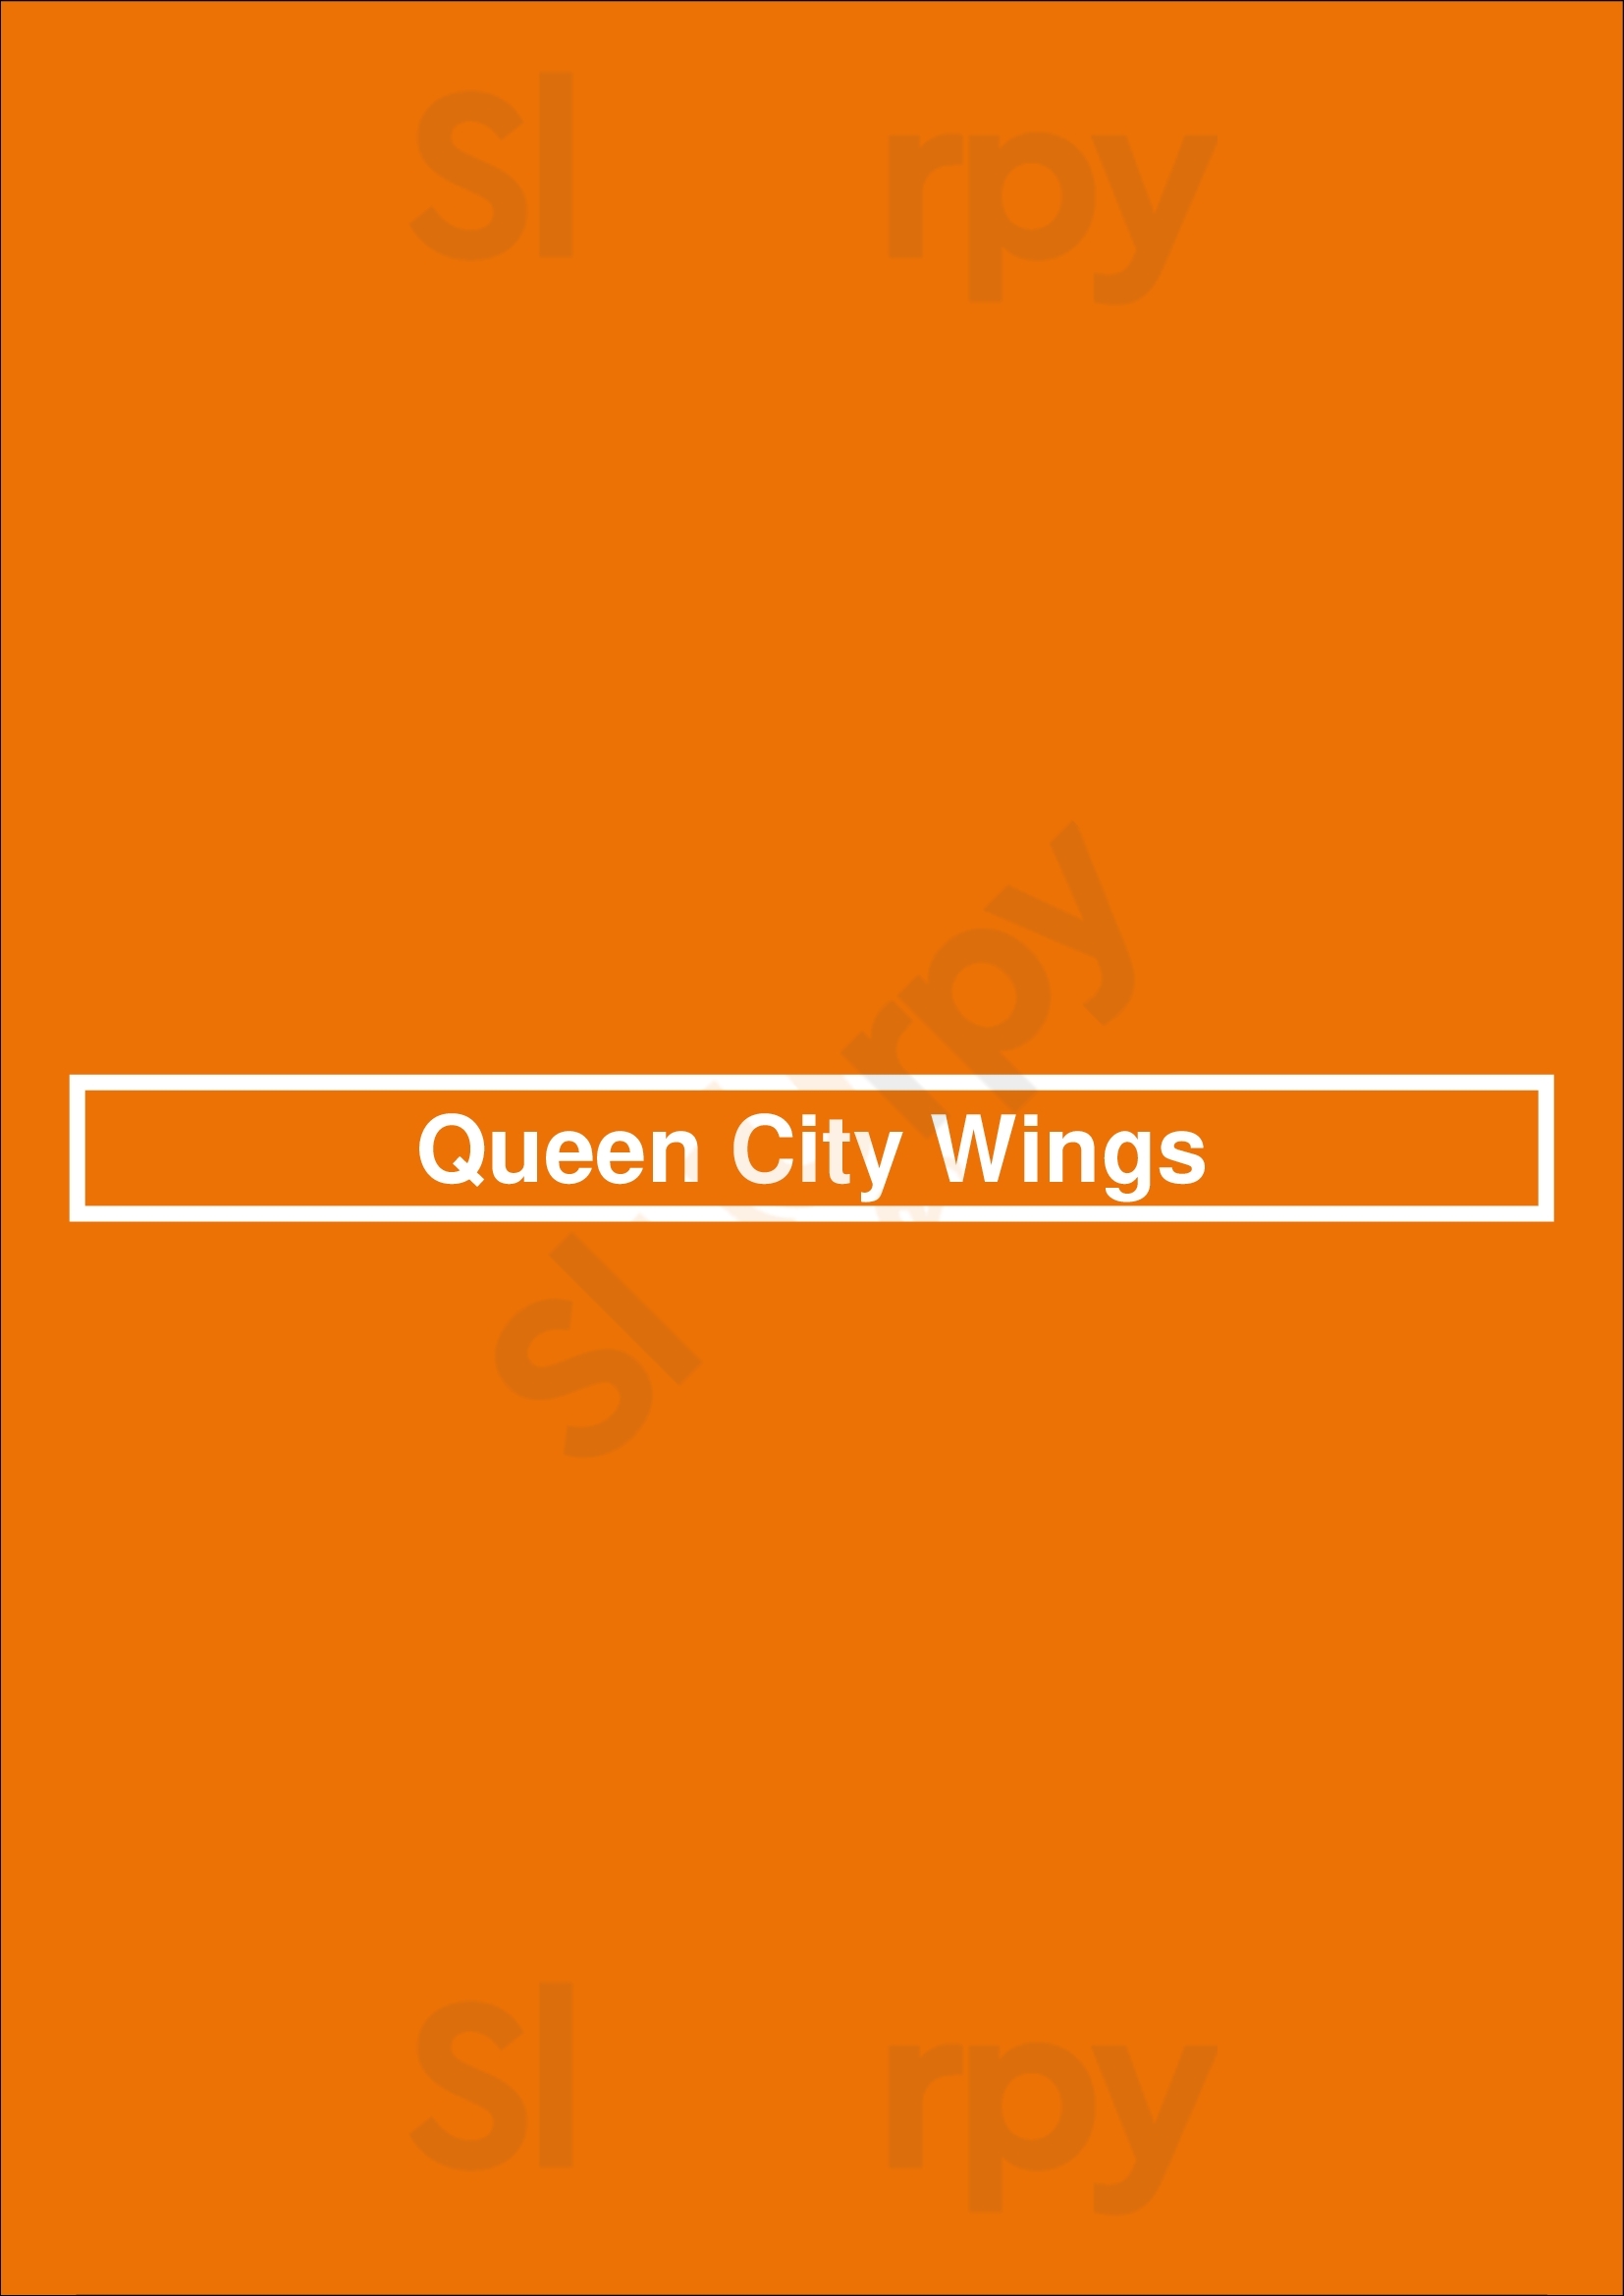 Queen City Wings Charlotte Menu - 1